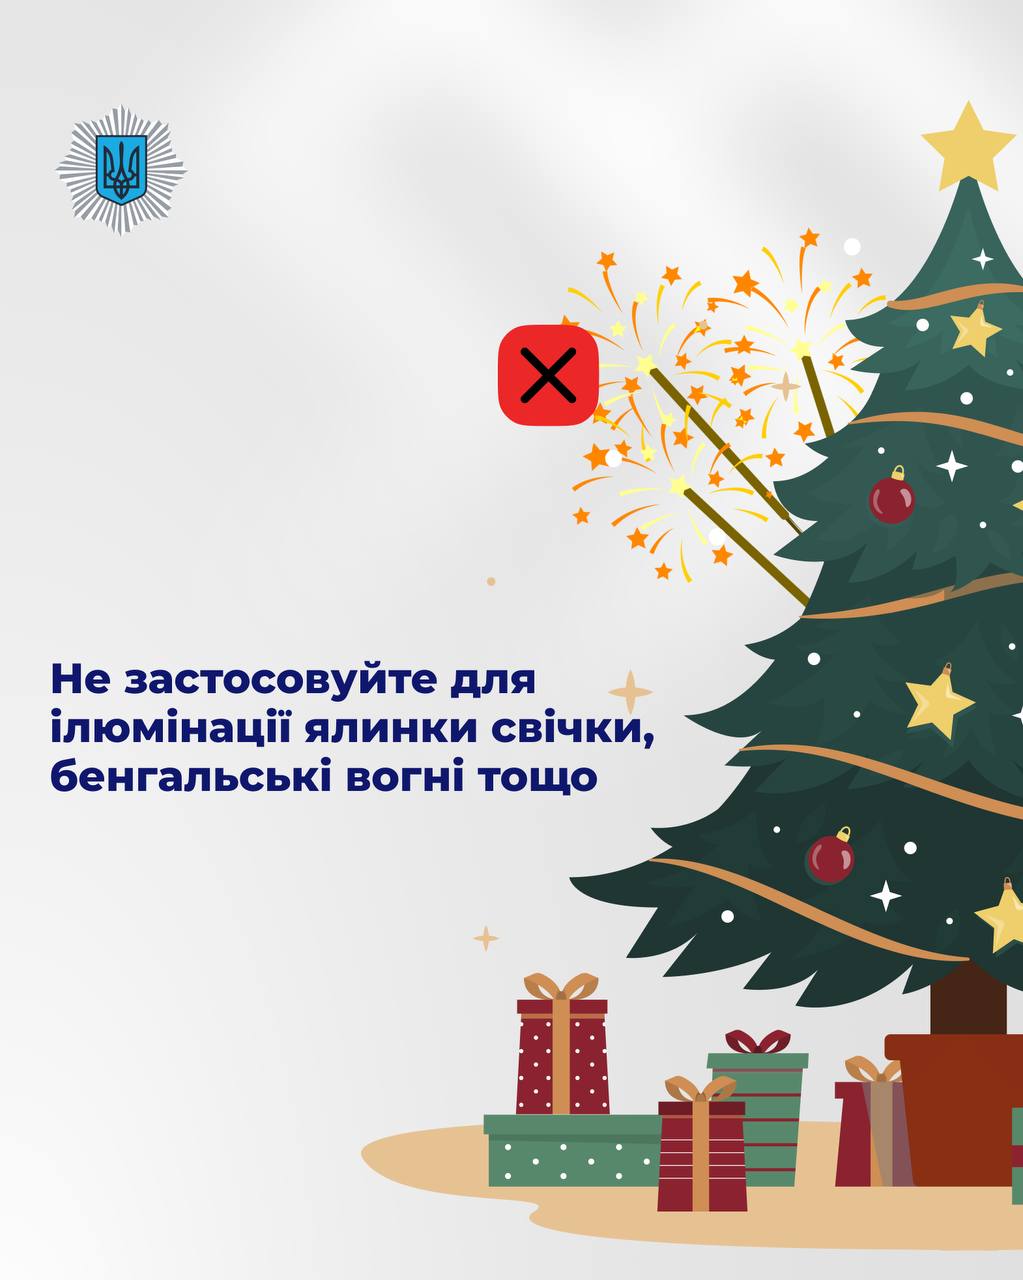 В Киеве с 4 января будут работать 44 пункта утилизации елок — фото